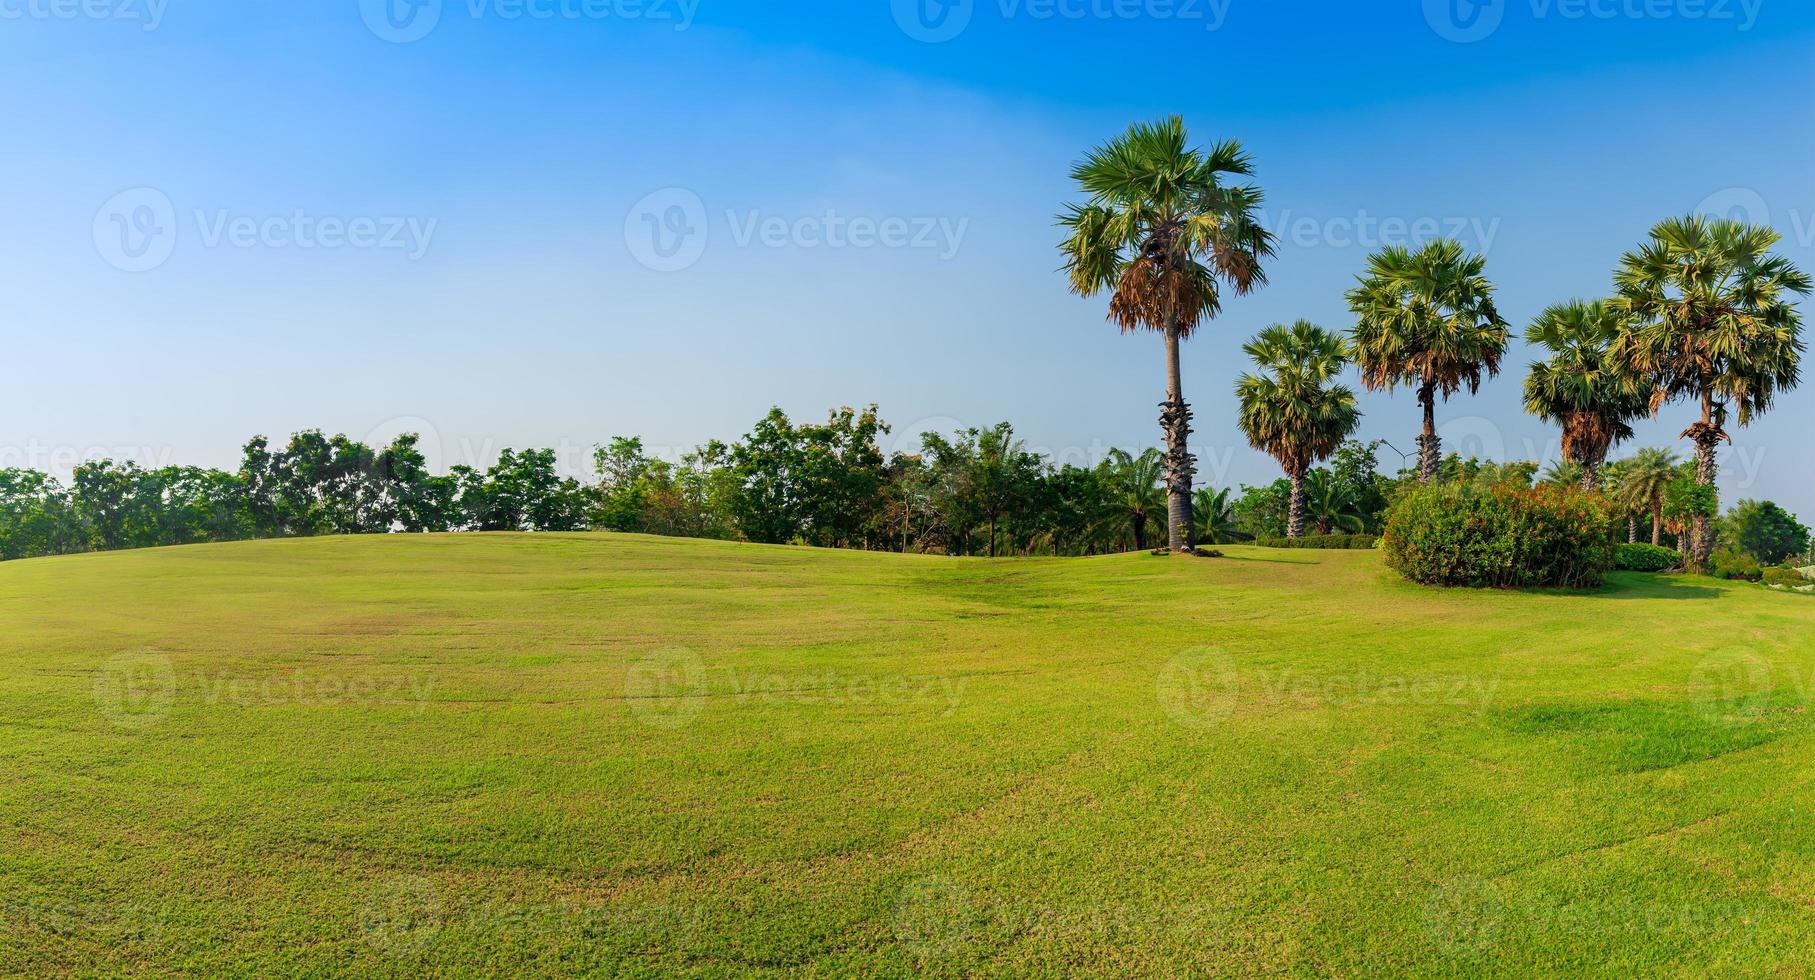 panorama herbe verte sur le terrain de golf avec palmier photo